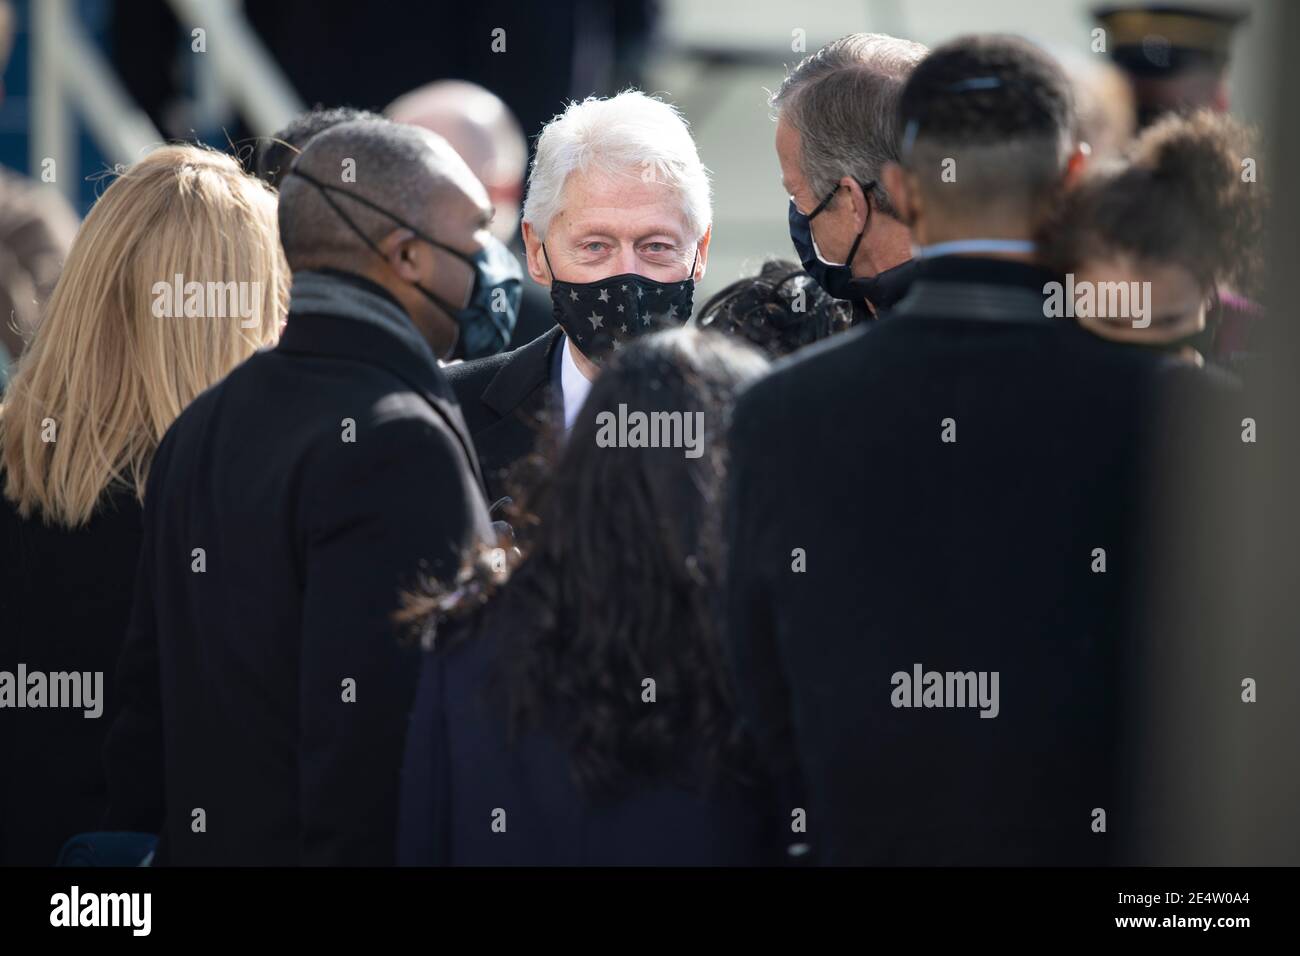 L'ancien président Bill Clinton arrive pour la 59e cérémonie d'inauguration présidentielle au front ouest du Capitole des États-Unis le 20 janvier 2021 à Washington Banque D'Images